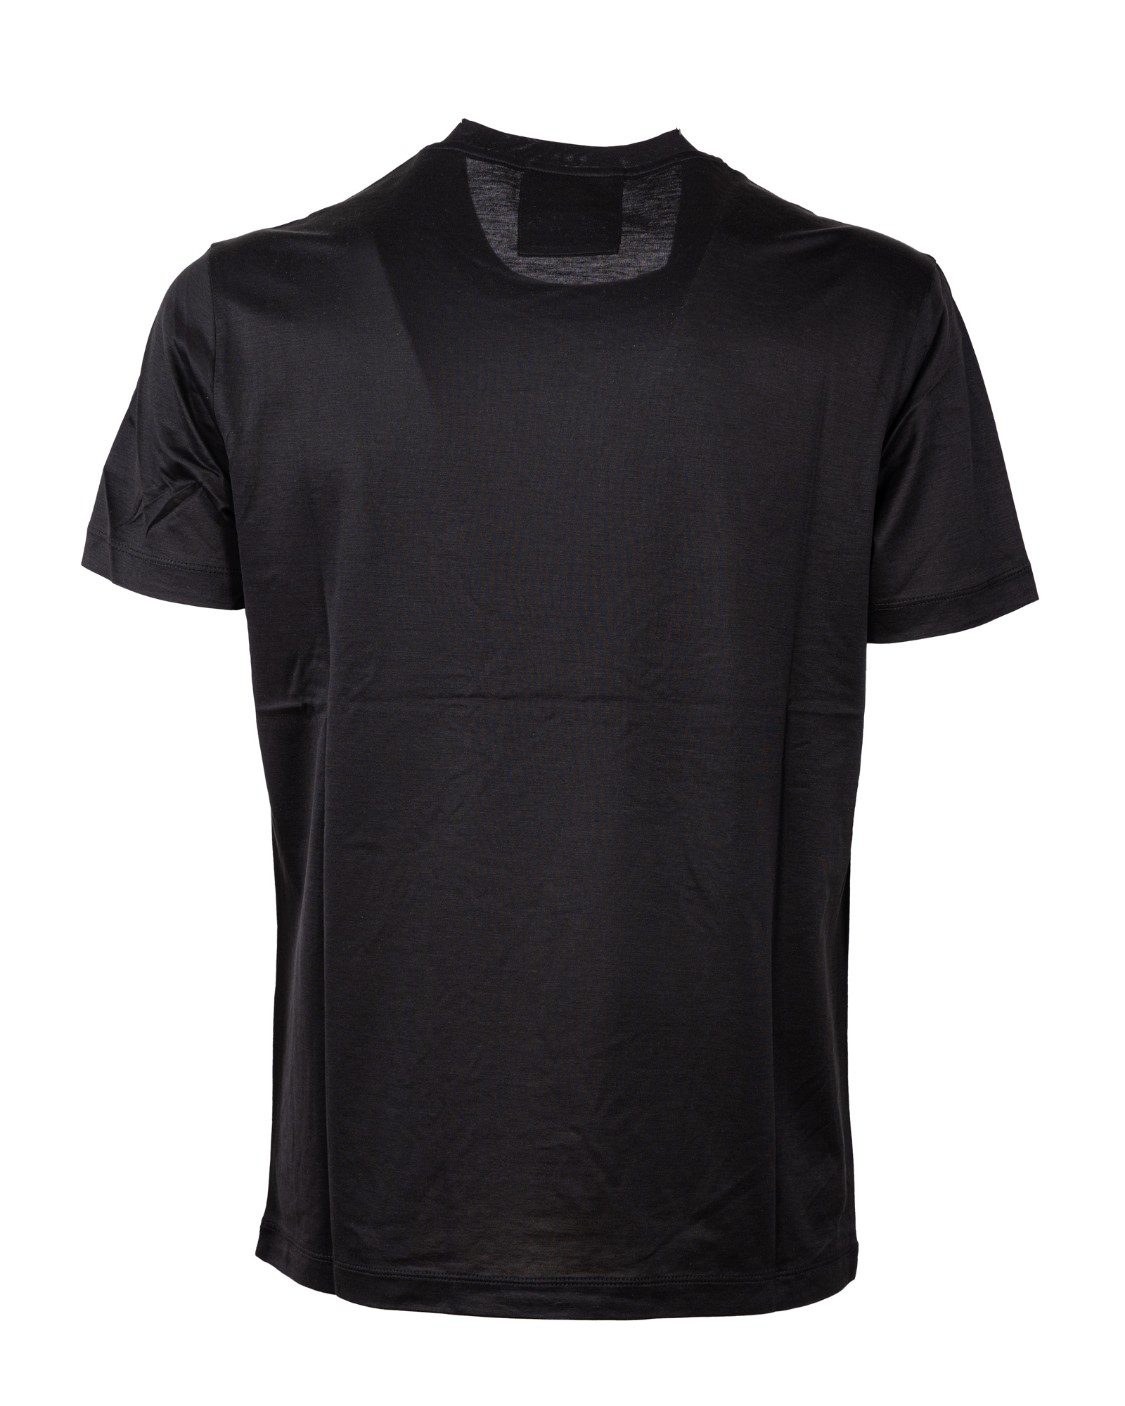 shop EMPORIO ARMANI  T-shirt: Emporio Armani t-shirt in cotone elasticizzato.
Scollo rotondo.
Maniche corte.
Composizione: 70% lyocell 30% cotone.
Fabbricato in Cina.. 8N1TE8 1JUVZ-0999 number 1683698